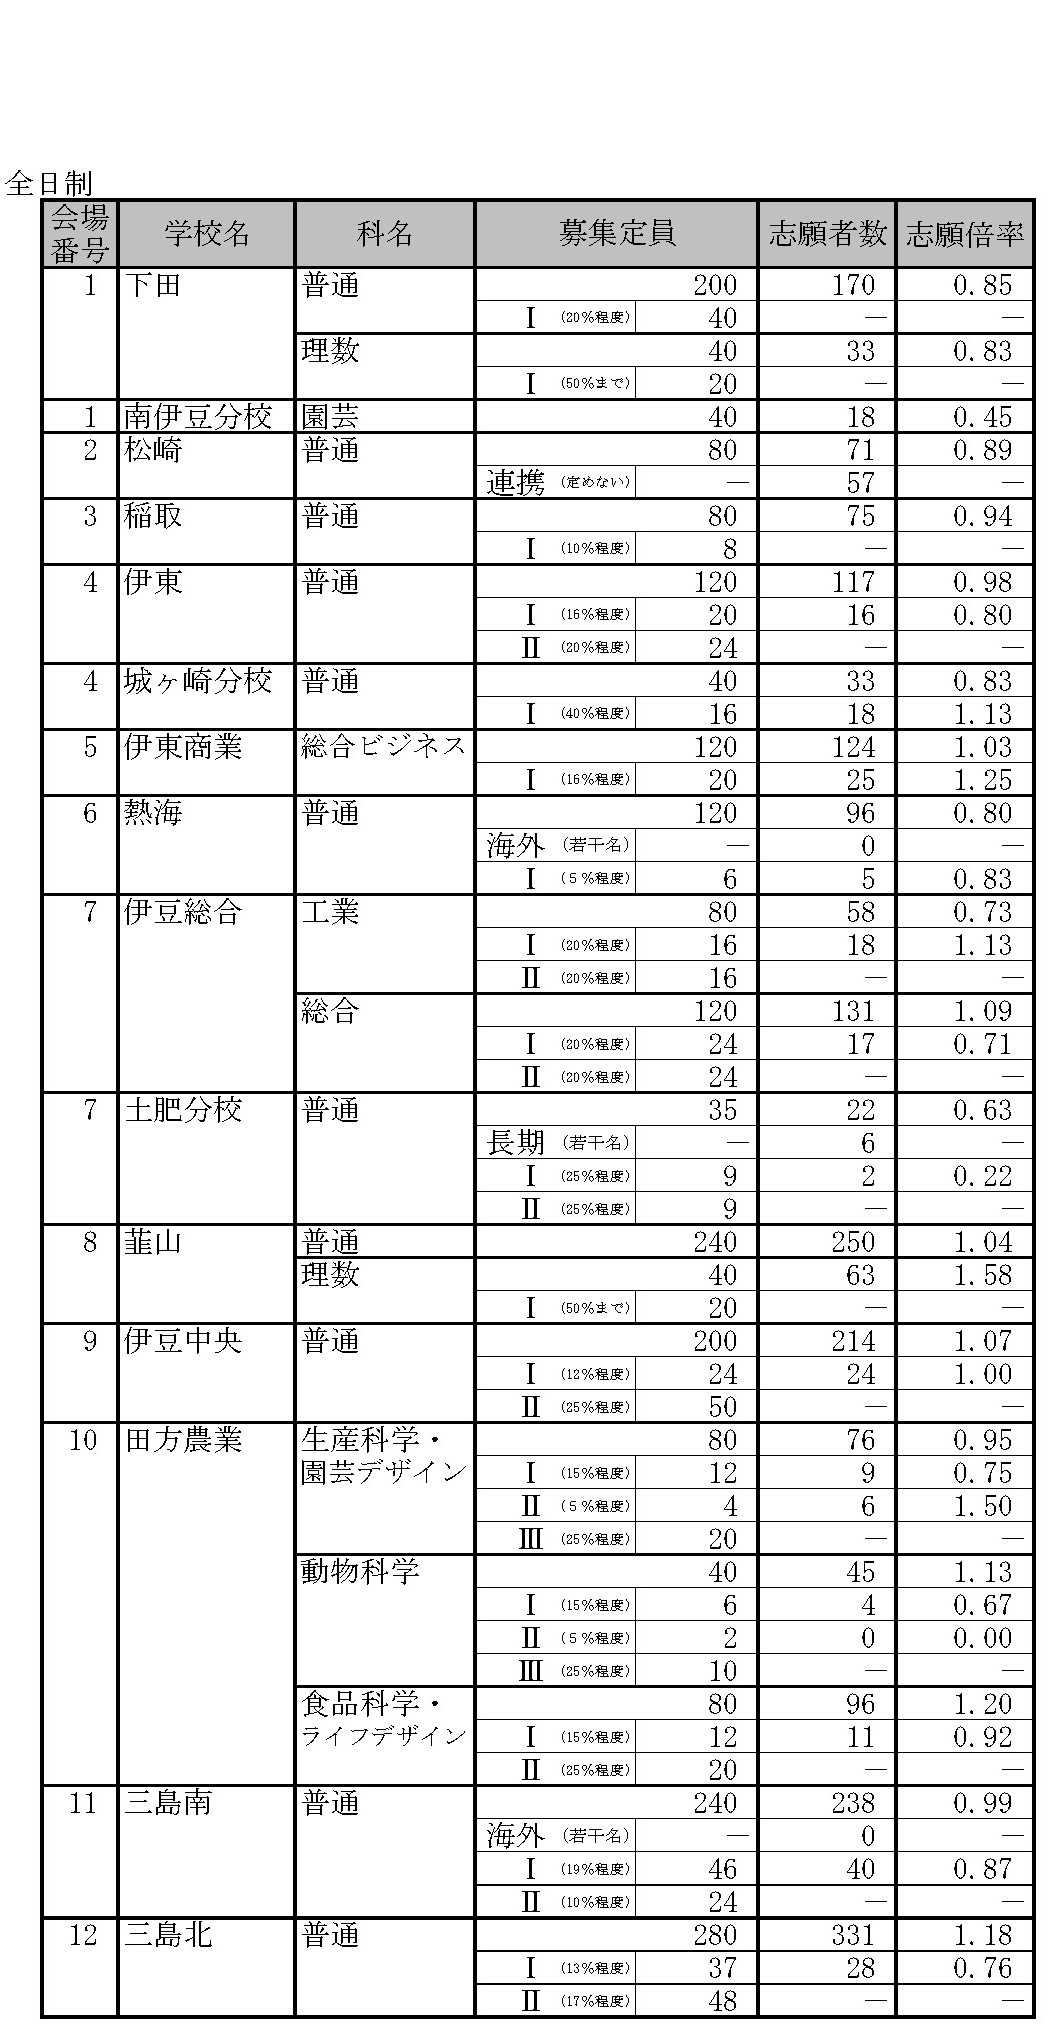 高校受験19 静岡県公立高校入試 一般選抜の志願状況 倍率 2 時点 静岡 普通 1 28倍など リセマム